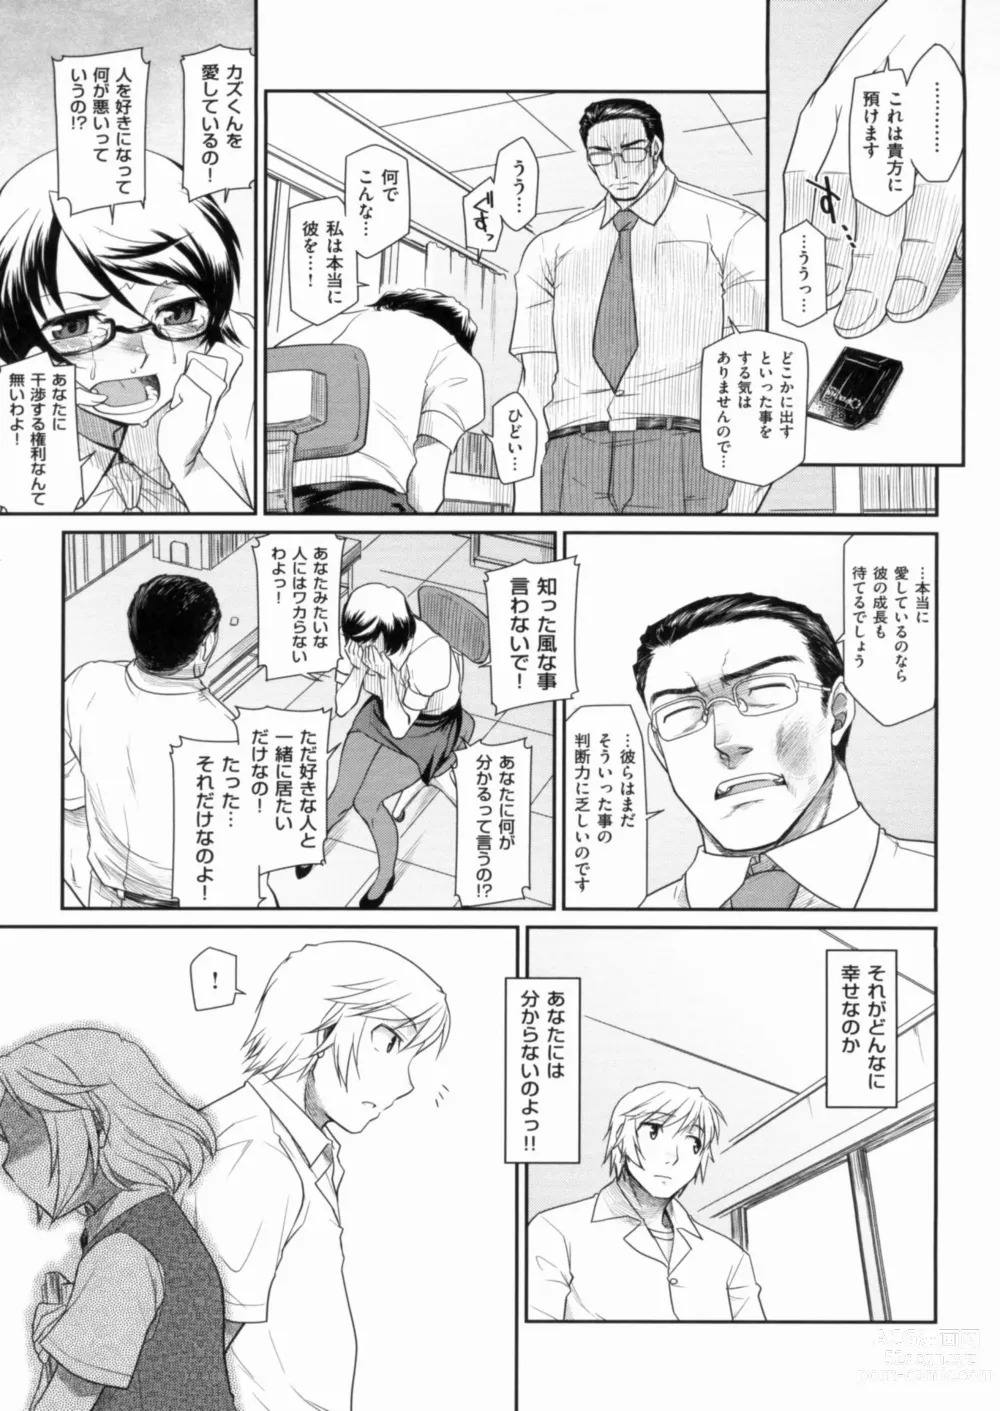 Page 229 of manga Hatsu Koi Ki